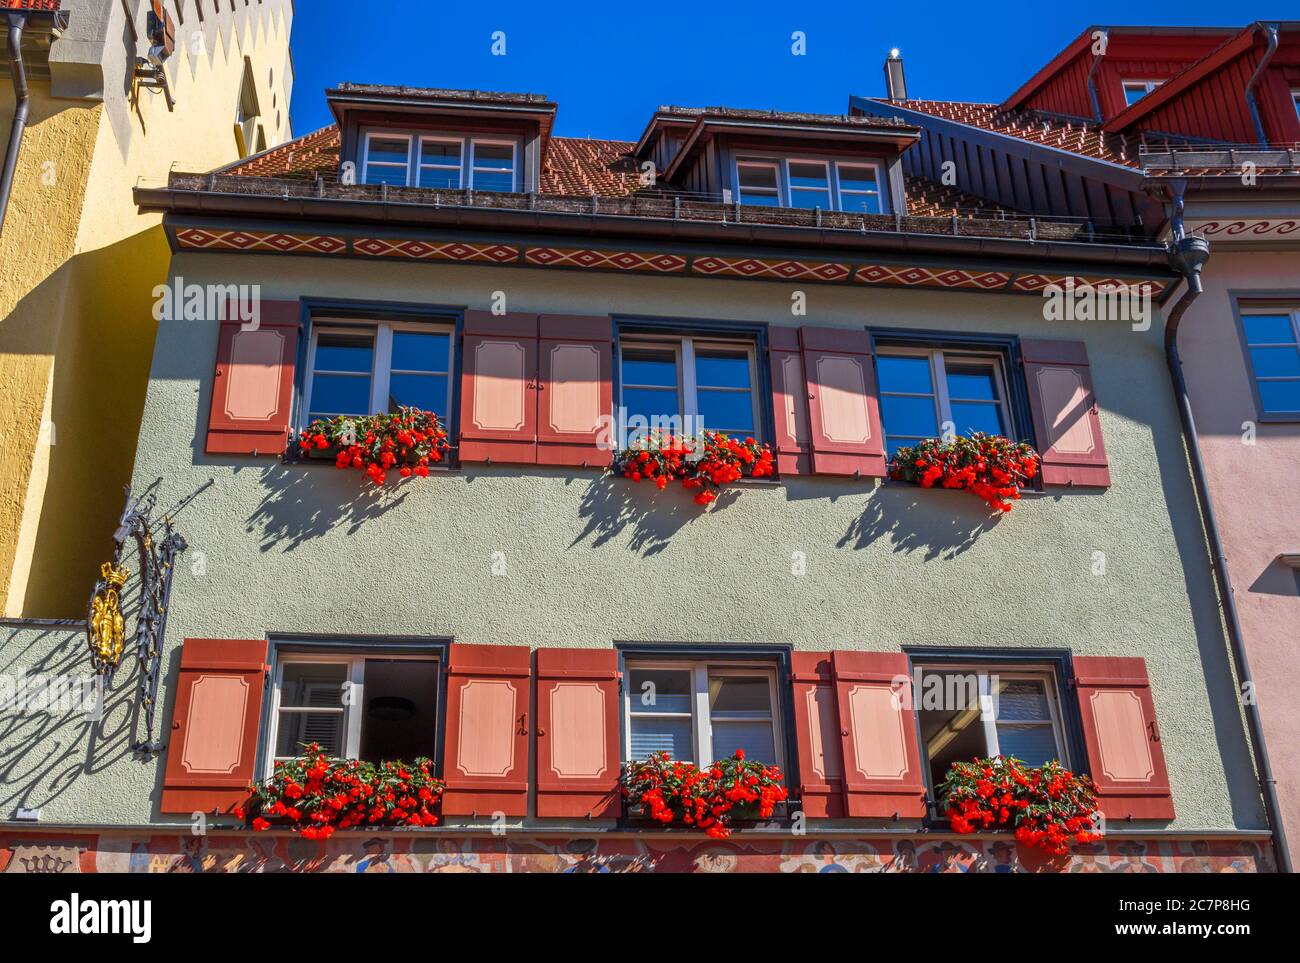 Facciata casa con tapparelle colorate e scatole di fiori, centro storico, Wangen im Allgäu, Baden-Württemberg, Germania, Europa Foto Stock